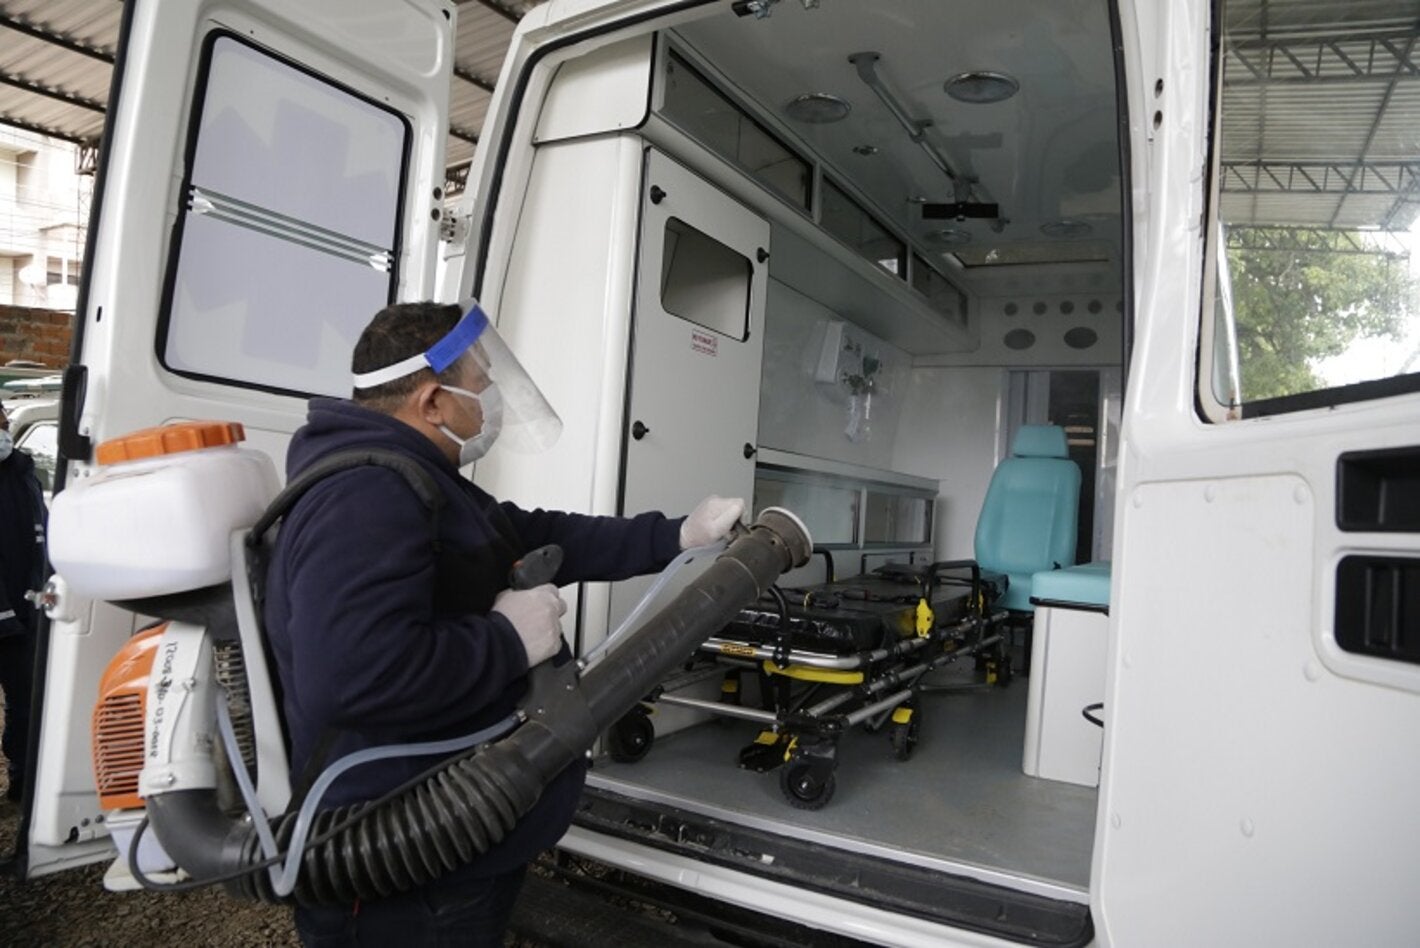 Esterilización de ambulancia